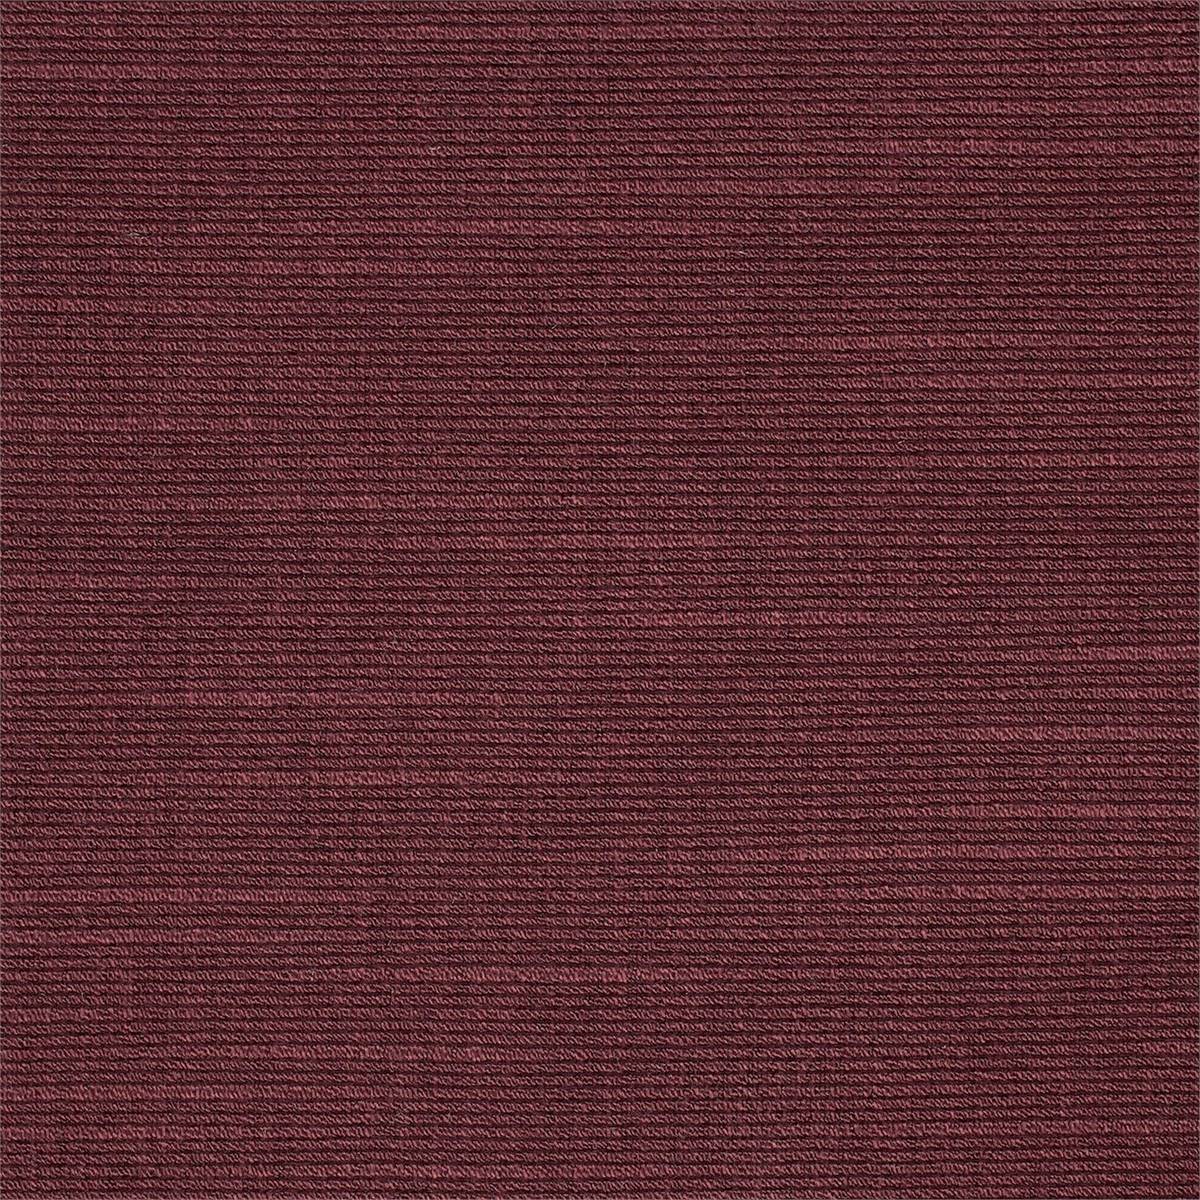 Himalaya Burgundy Fabric by Zoffany